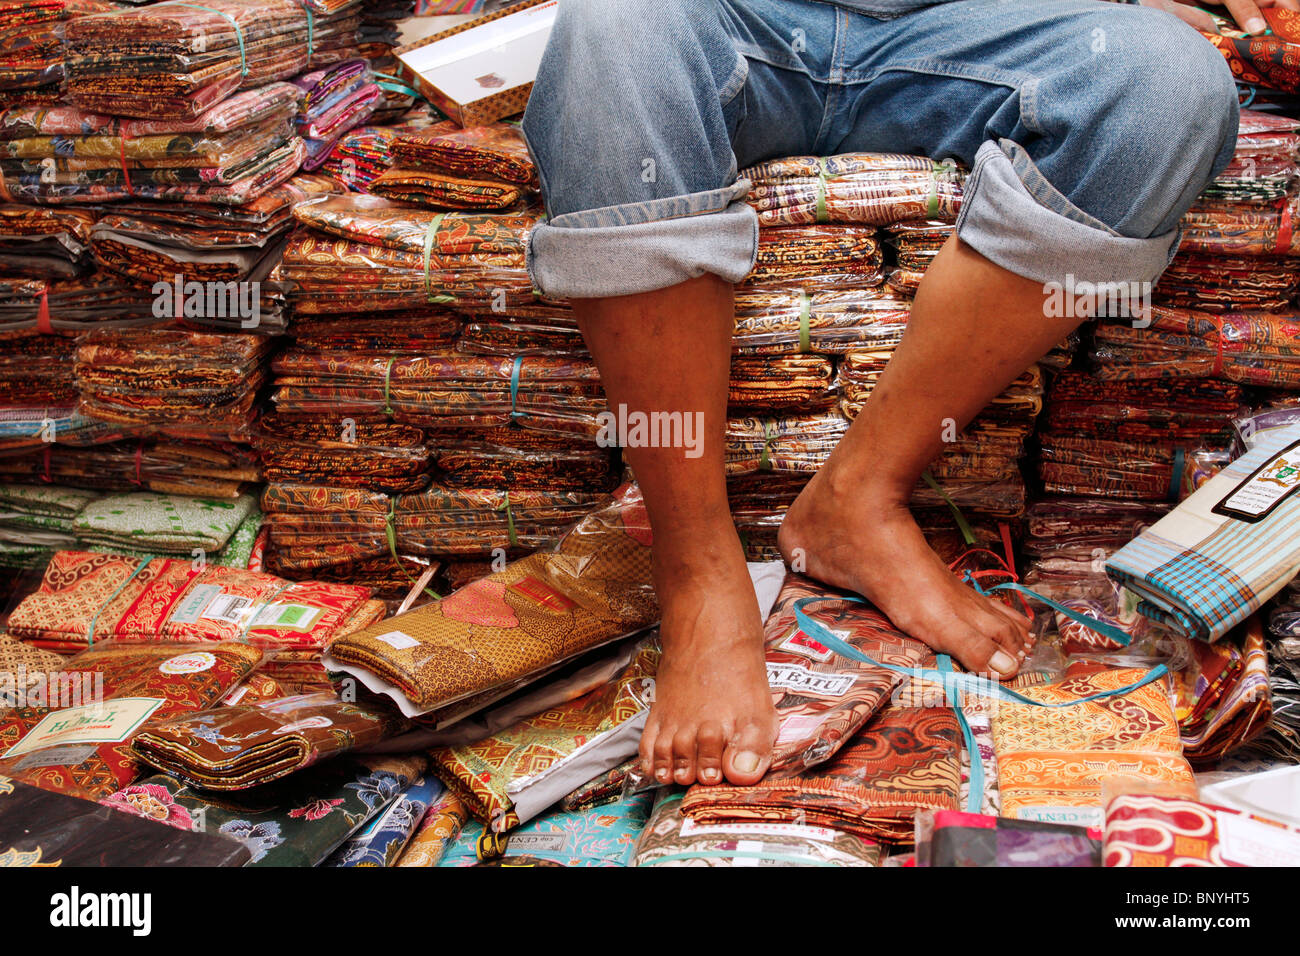 Assis sur un tas de batiks à Bandung, Indonésie. Banque D'Images